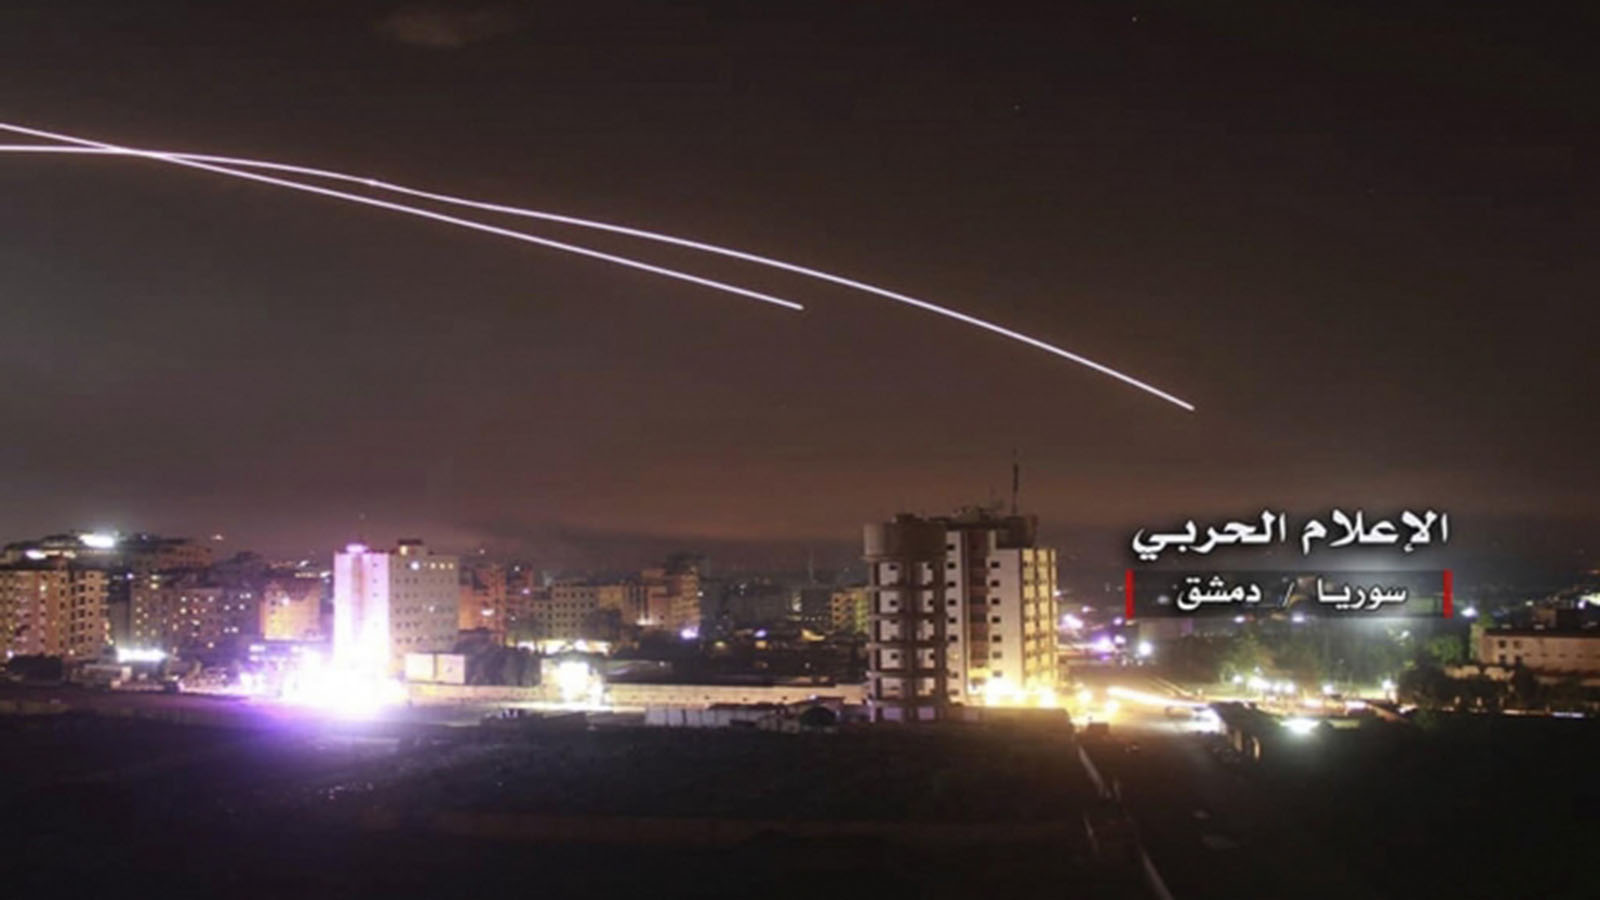 الغارات الإسرائيلية الاعنف تدمر مواقع إيرانية في دمشق وحمص